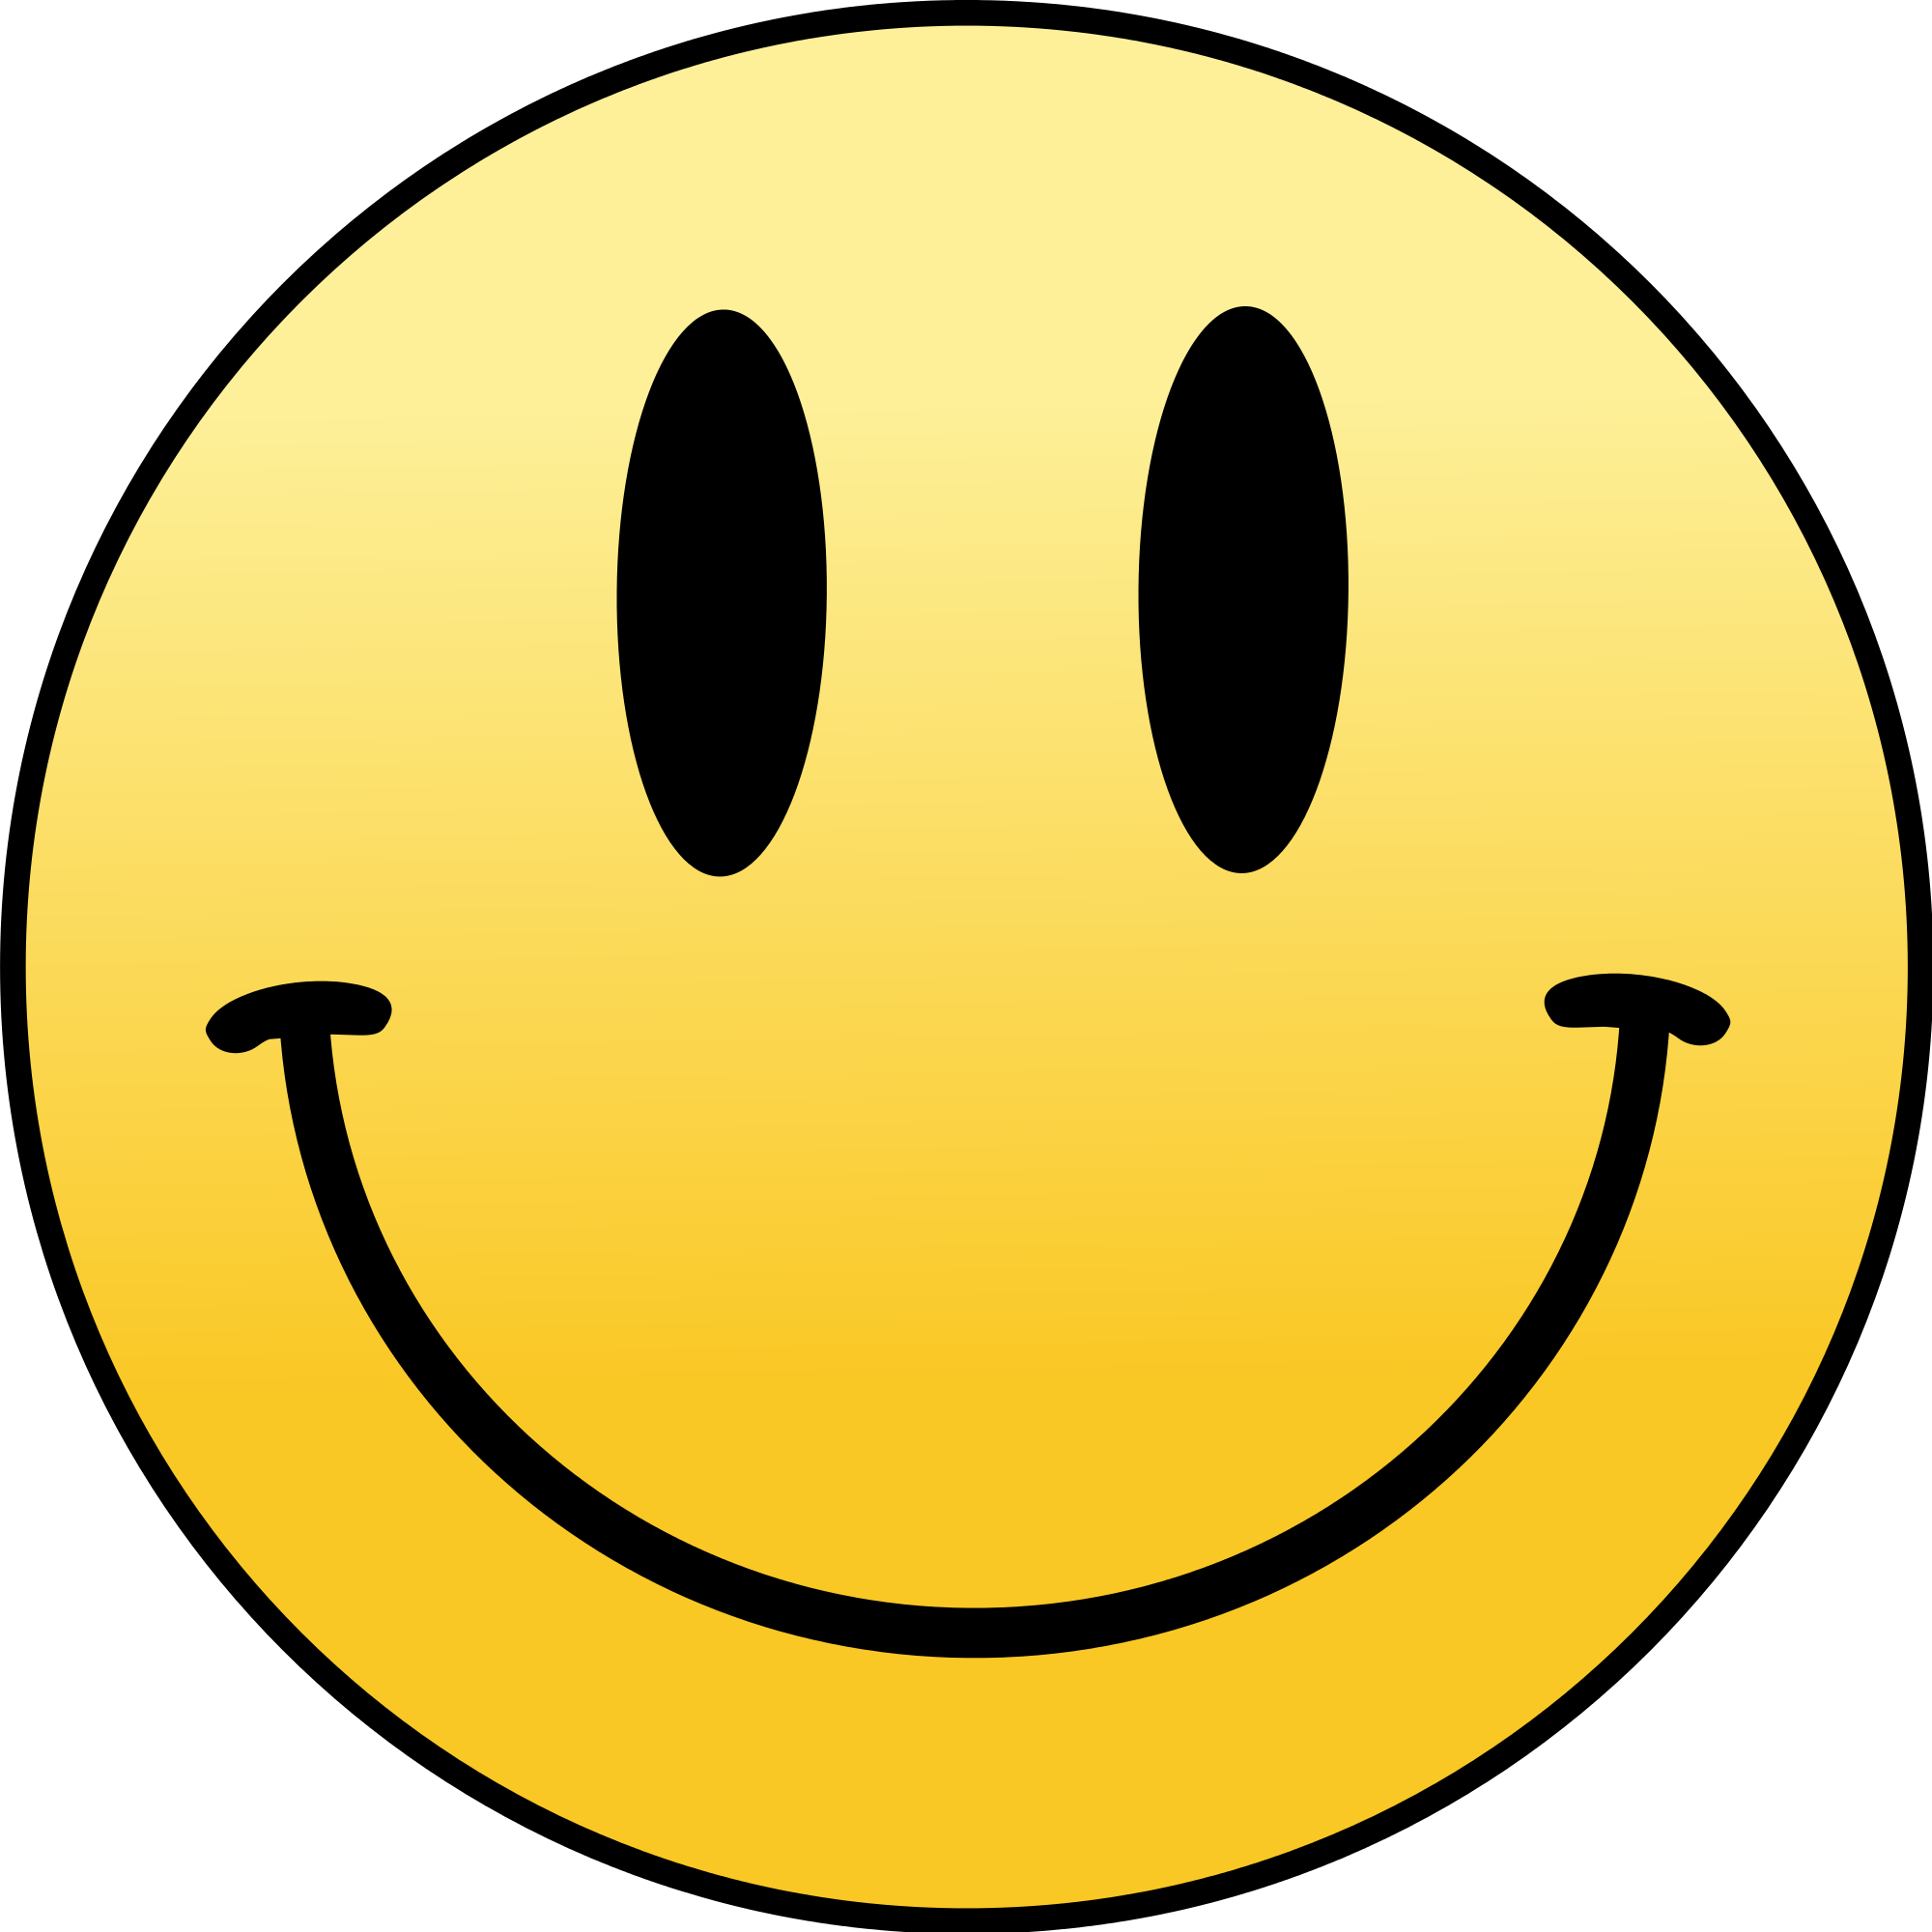 Free Downloadable Smiley Faces - KibrisPDR